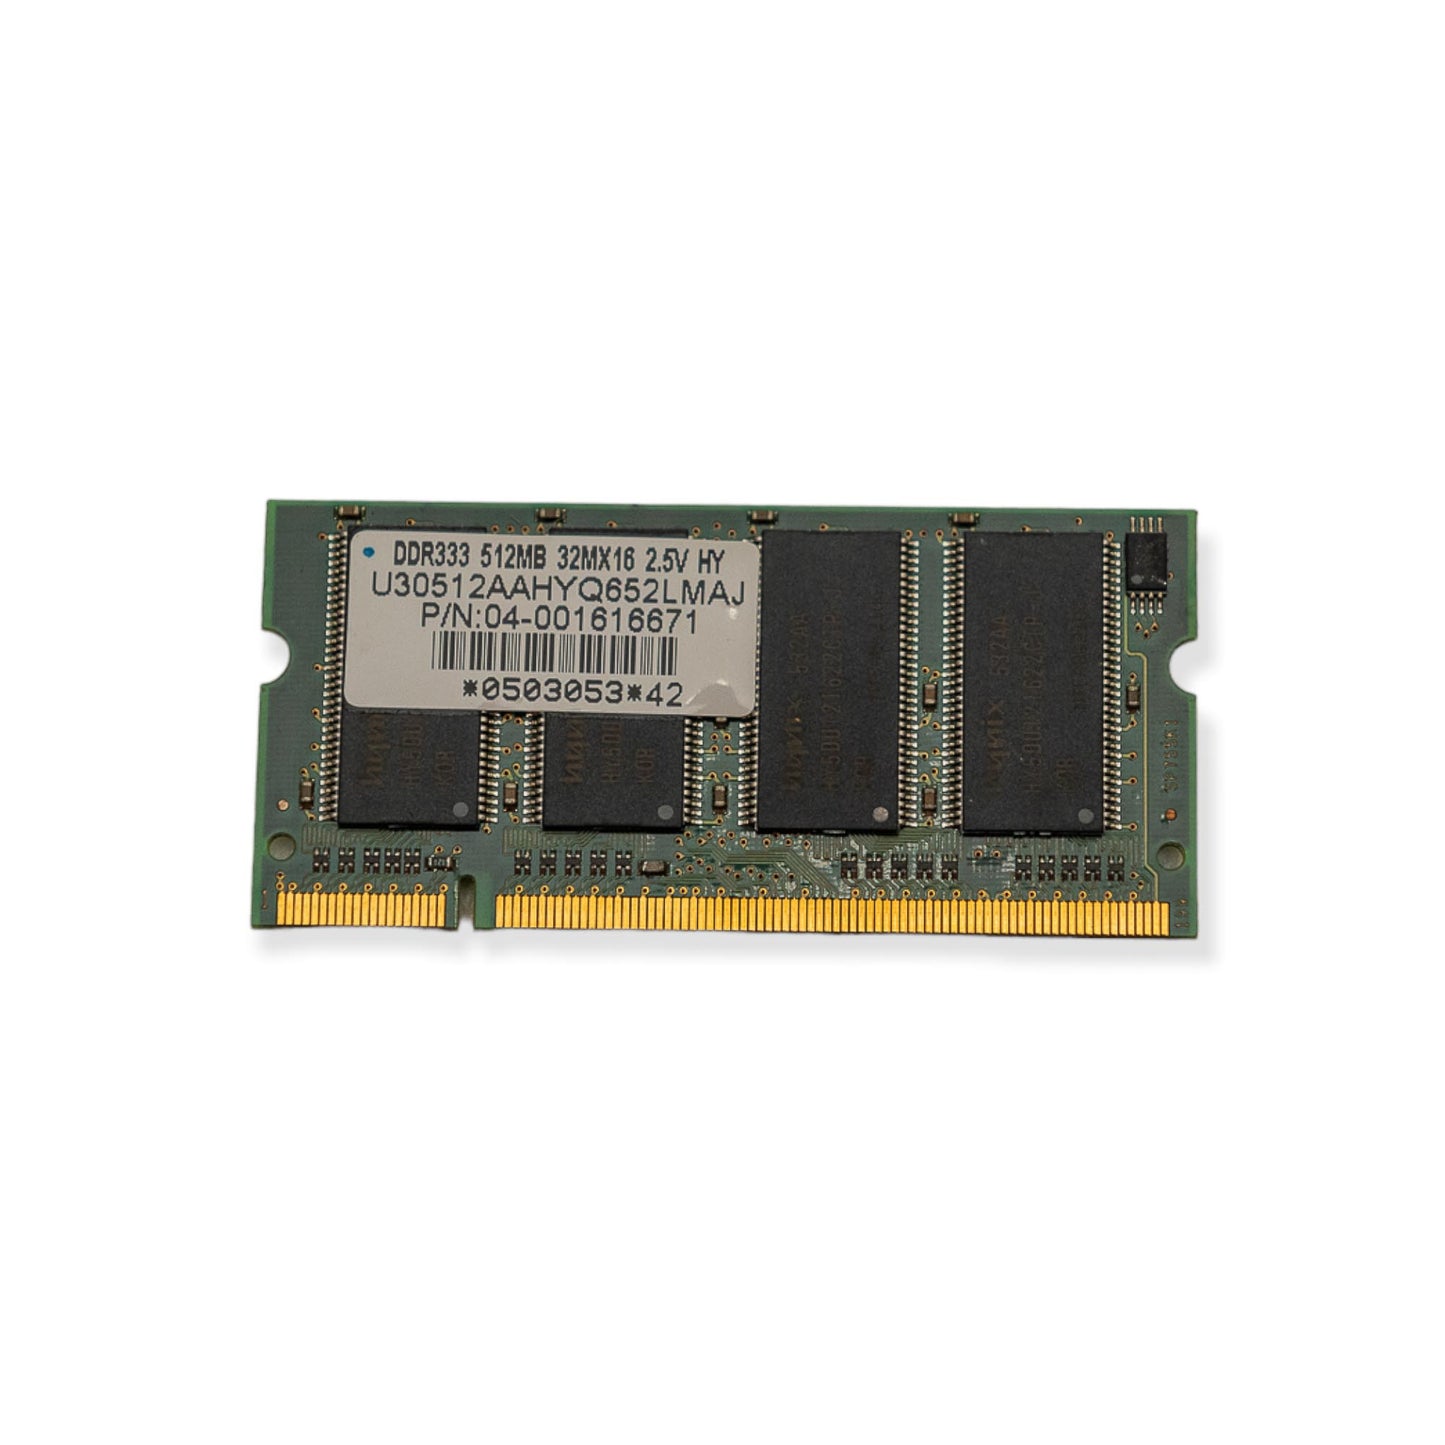 Memória Ram SODIMM USI DDR333 512MB U30512AAHYQ652LMAJ